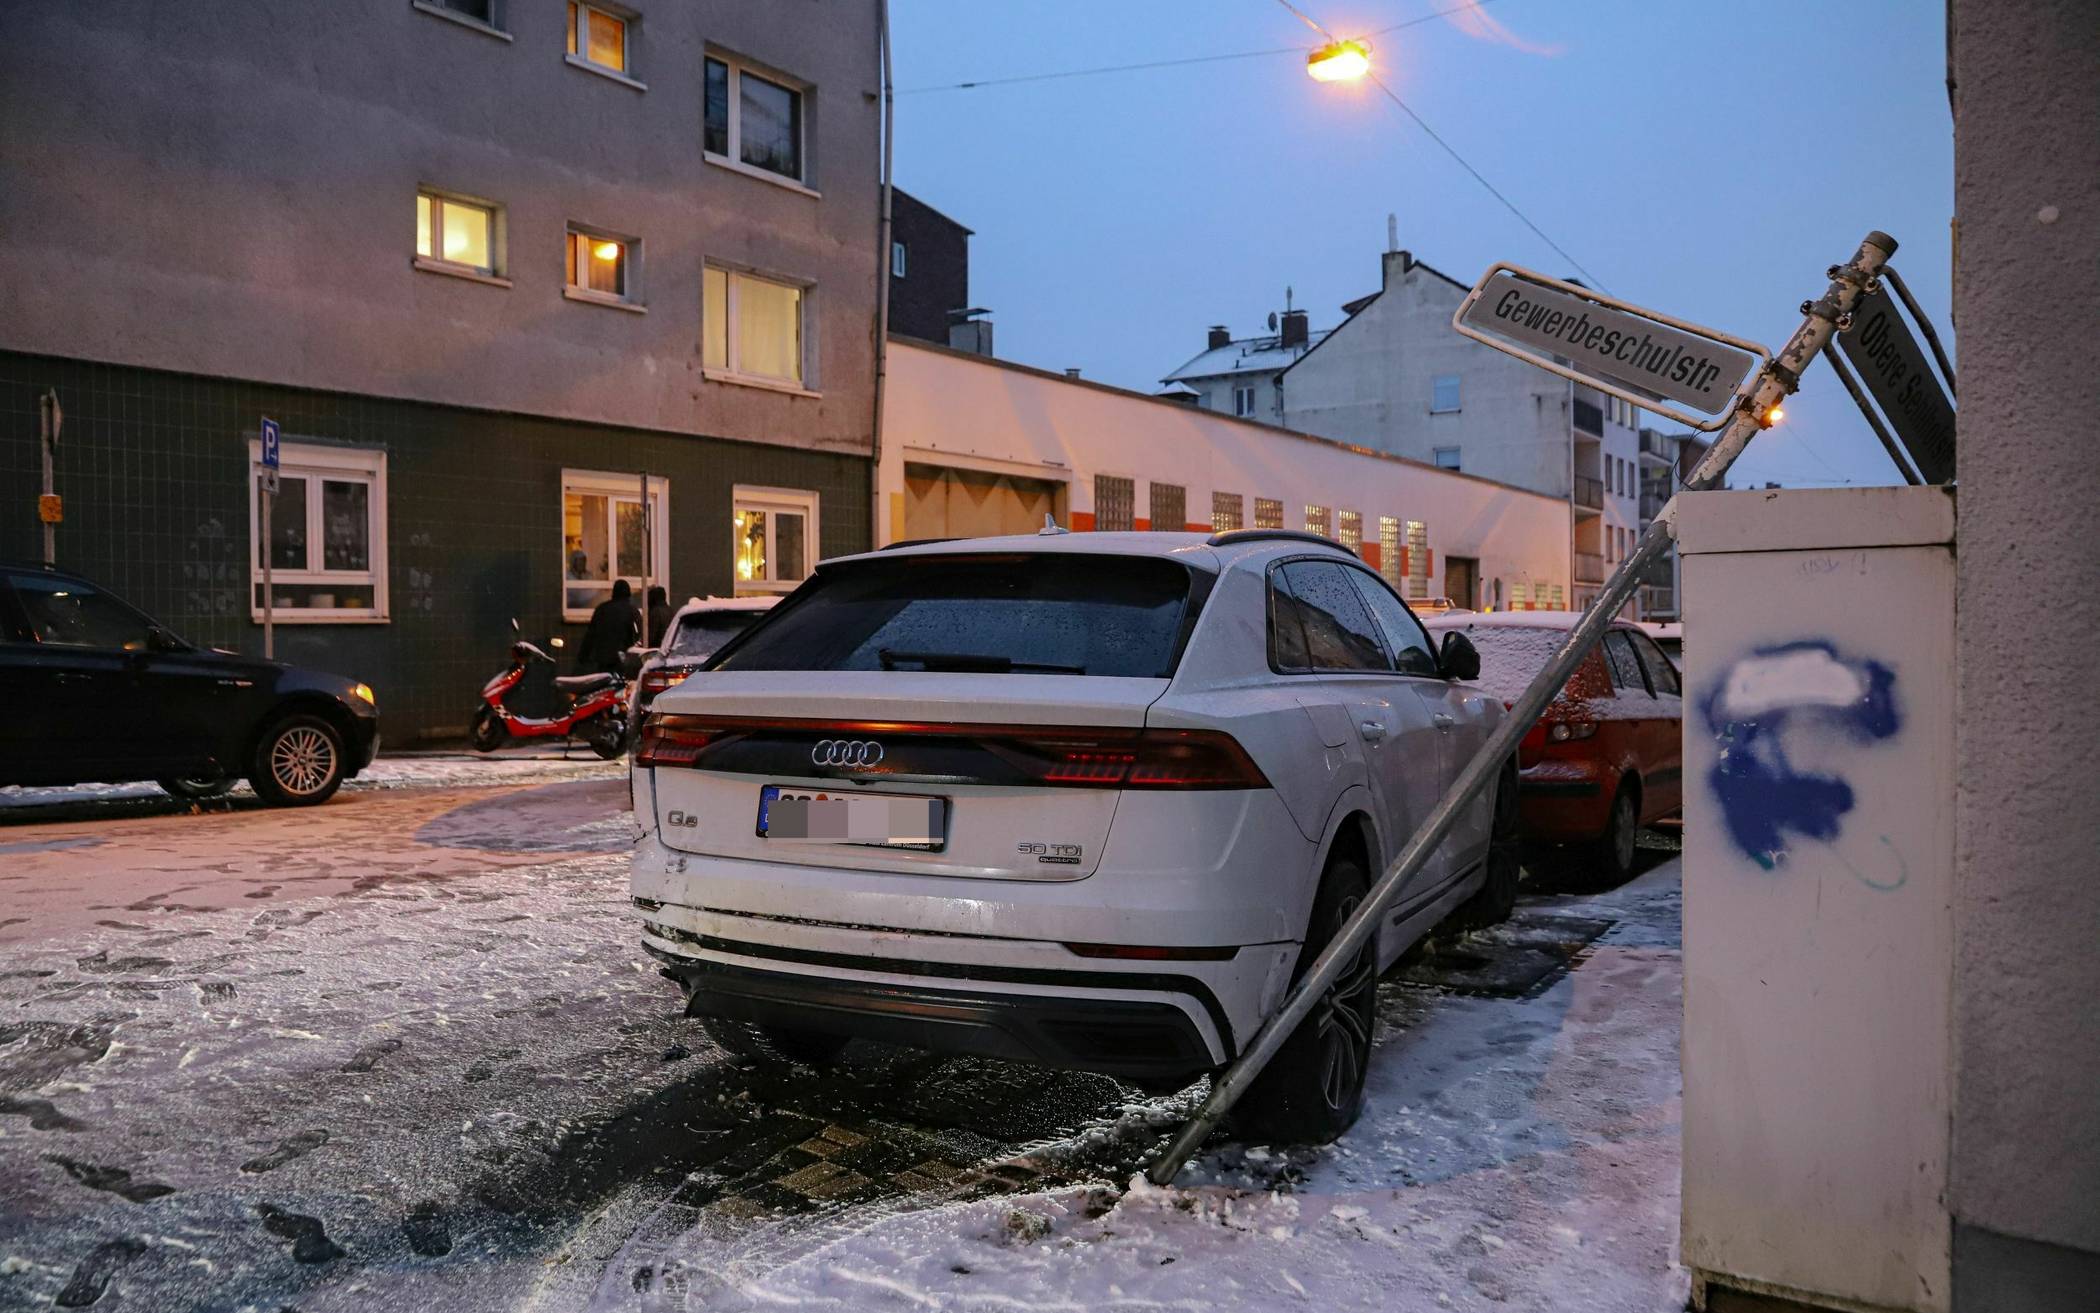 Bilder: Unfälle auf glatten Straßen​ in Wuppertal